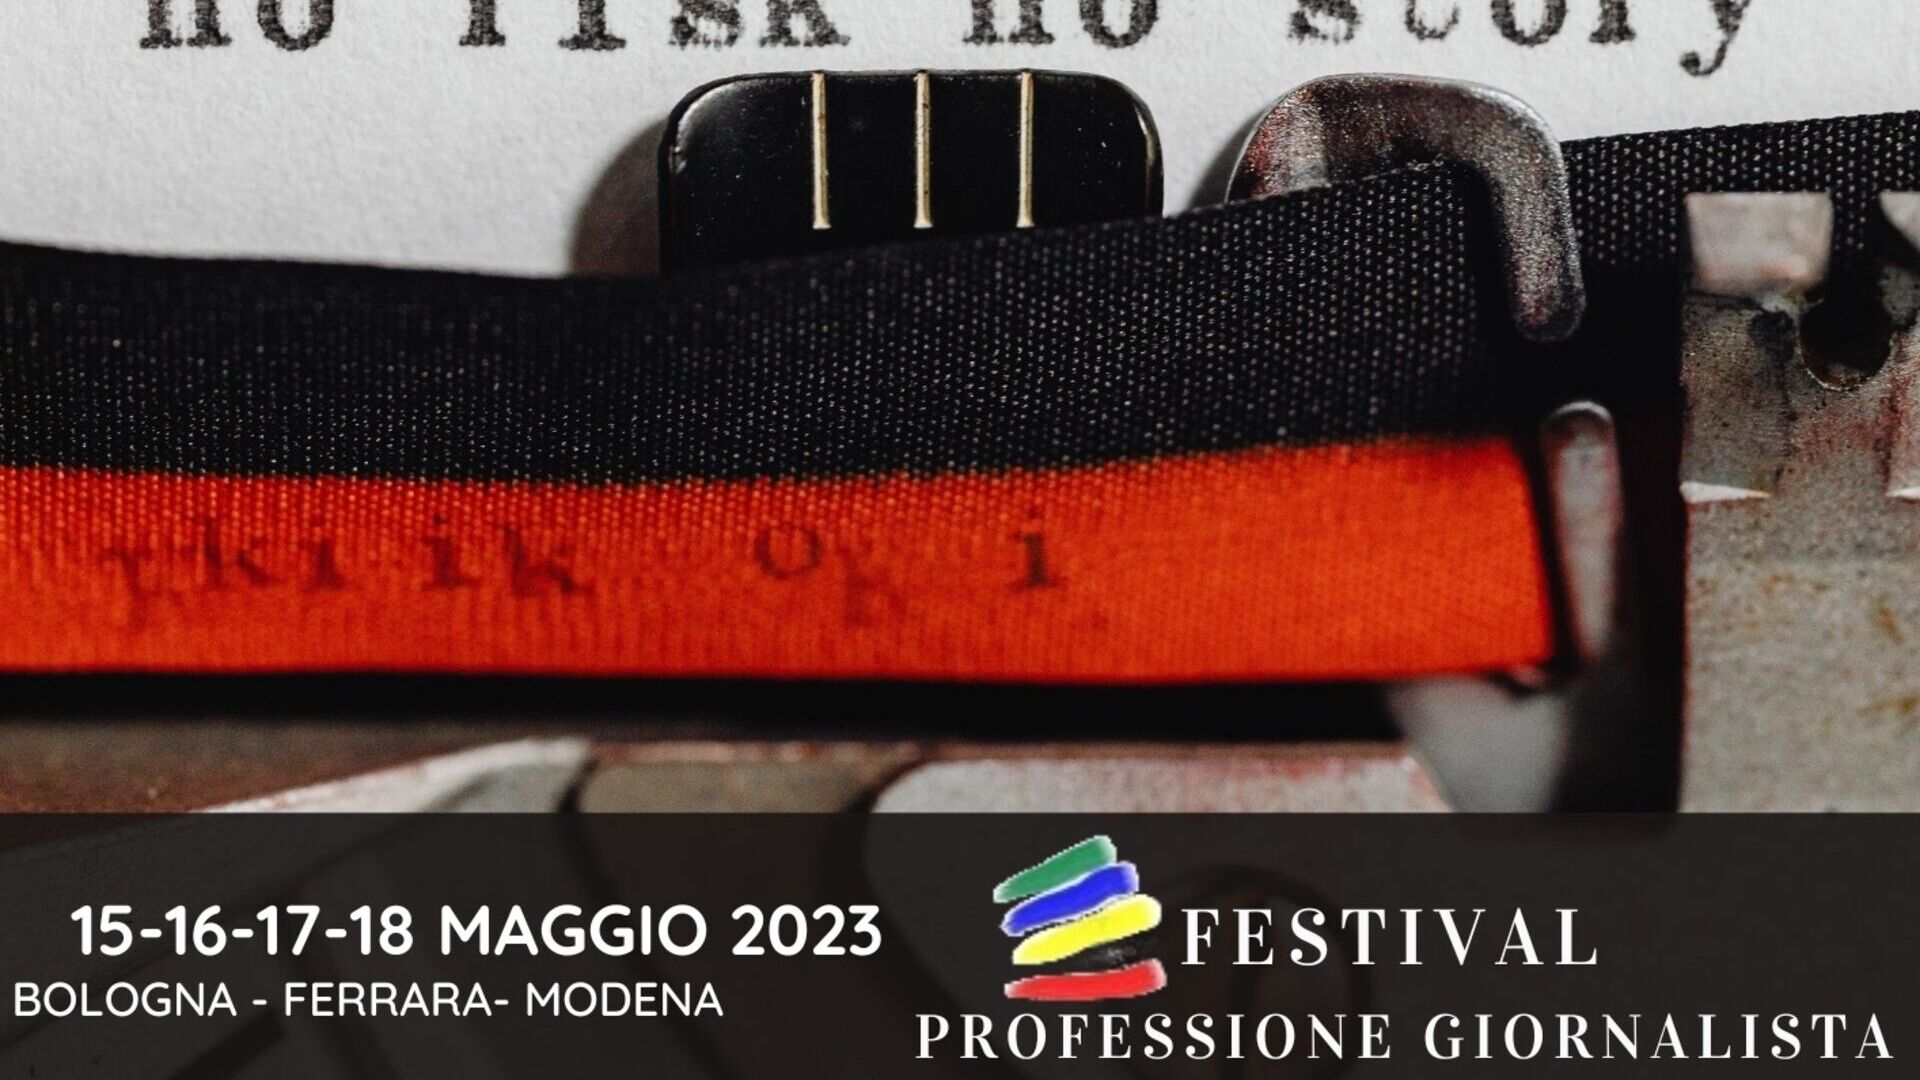 Журналисттин кесиби: "Professione Giornalista" фестивалынын 2023-жылдагы чыгарылышынын негизги визуалдуулугу (Болонья, Феррара, Модена, 15-16-17-18-май)